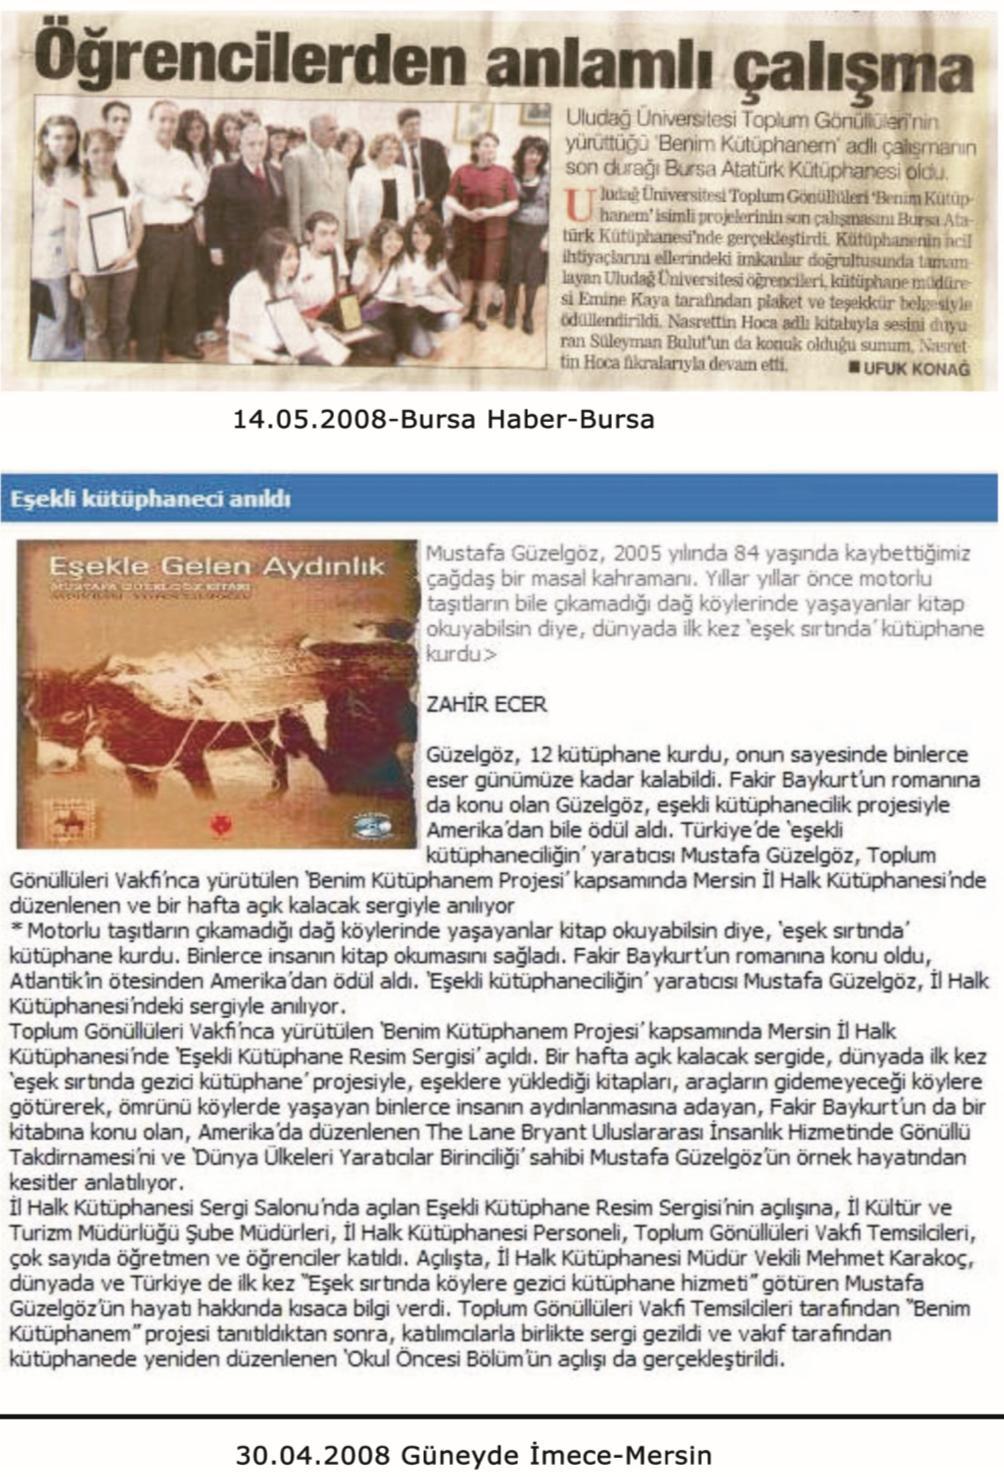 EK 13. Bursa Haber (14.05.